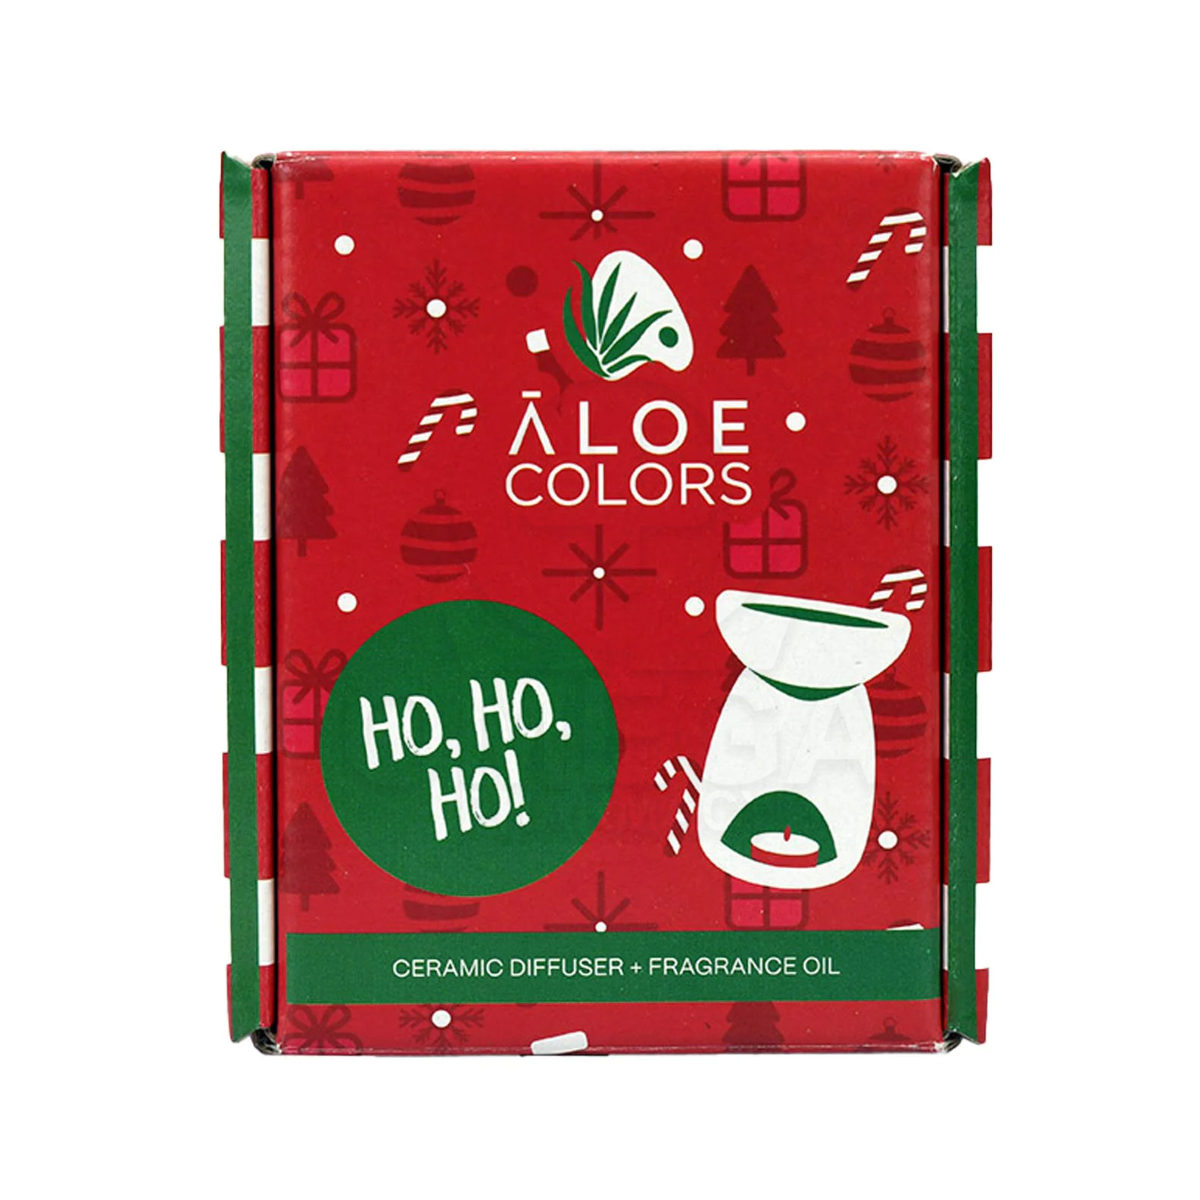 Aloe+ Colors | Ho Ho Ho Ceramic Diffuser Κεραμικός Αρωματοποιητής  | & Fragrance Oil Αιθέριο Έλαιο Με Άρωμα Μελομακάρονο | 10ml